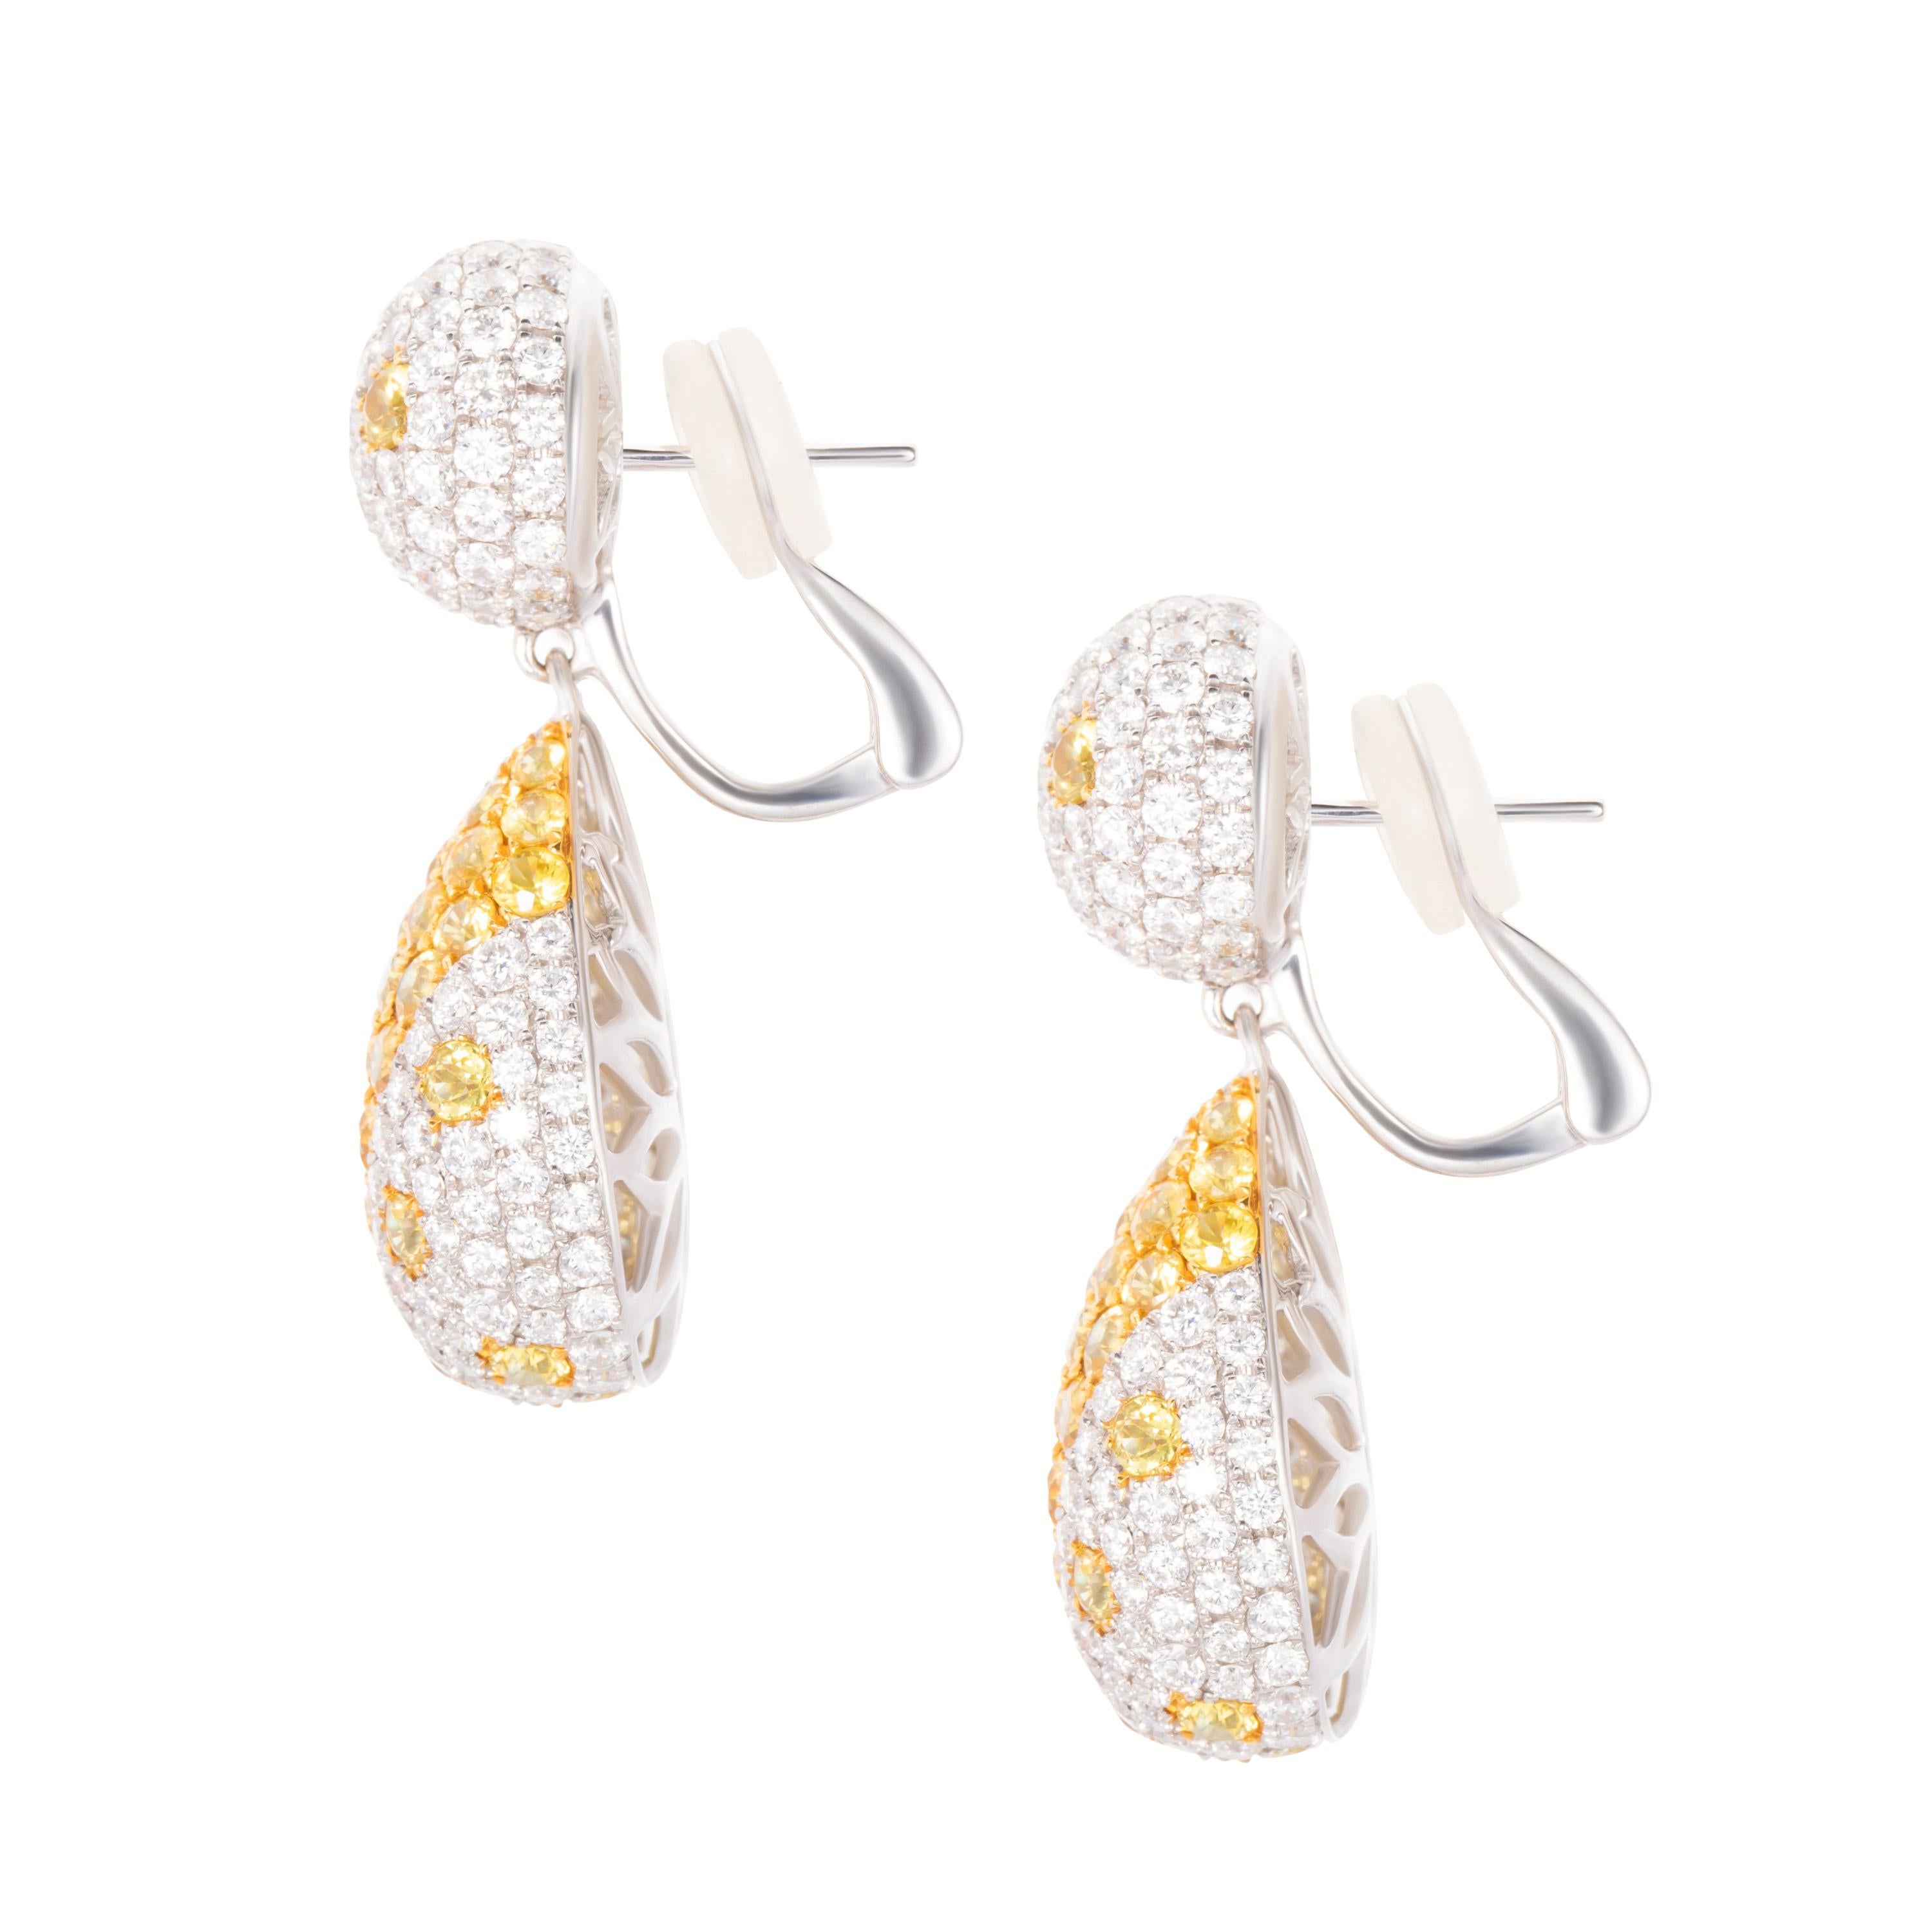 Die Ohrringe von Butani sind aus 18 Karat Weißgold gefertigt und mit 6,17 Karat strahlend gelben Saphiren und 5,12 Karat runden weißen Diamanten besetzt.  Länge des Ohrrings 3,5 cm.

Zusammensetzung:
18K Weißgold
302 runde Diamanten: 5,12 Karat
82